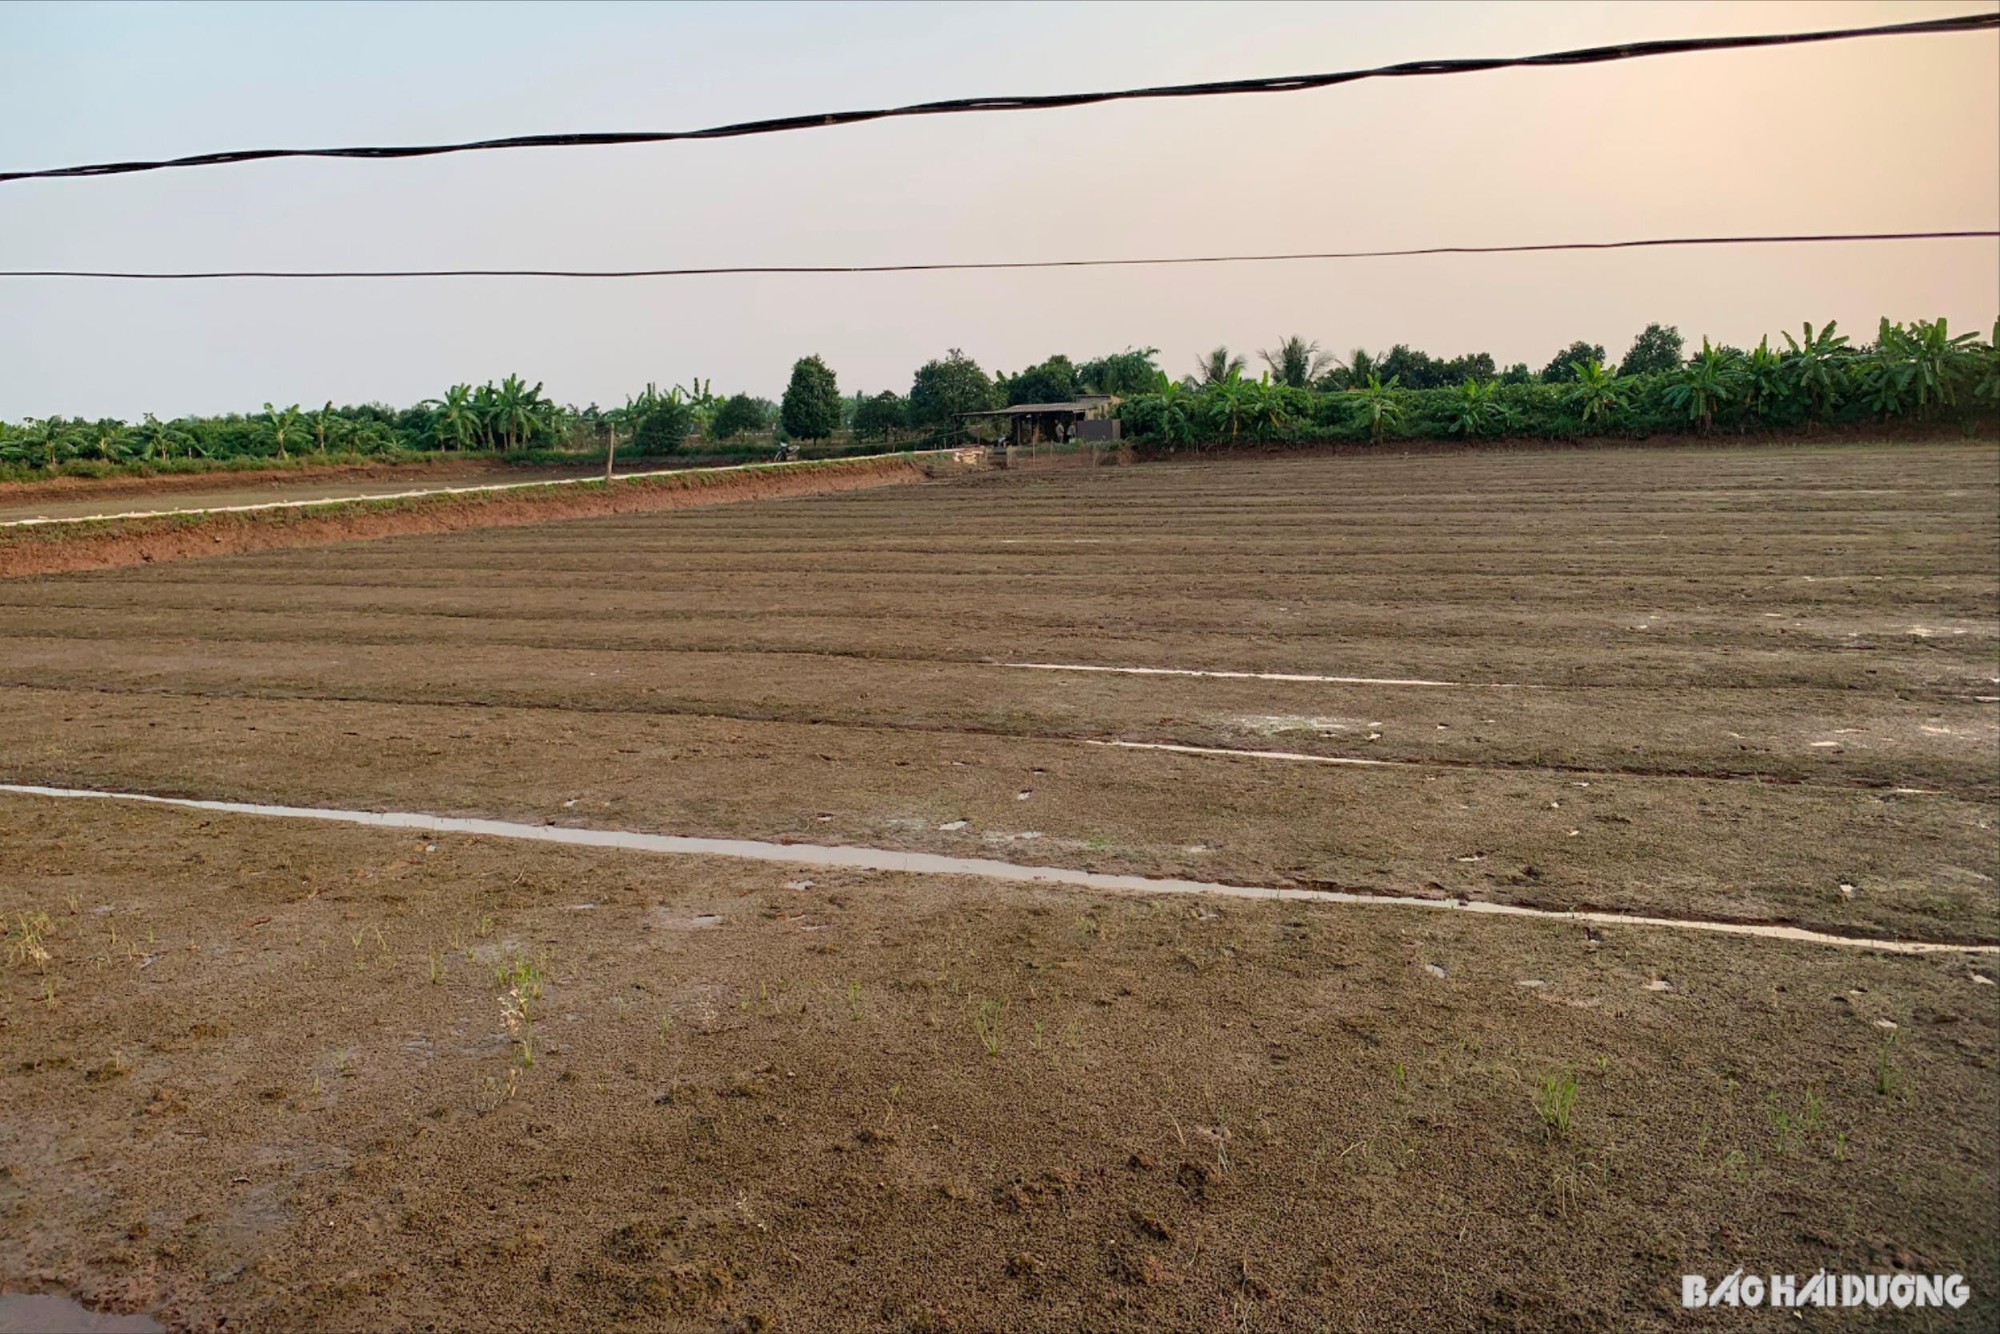  Nông dân huyện Thanh Hà, Hải Dương mua ngô, đậu tương về xay rồi rắc ra ngoài bãi để giữ 'lộc trời' - Ảnh 2.